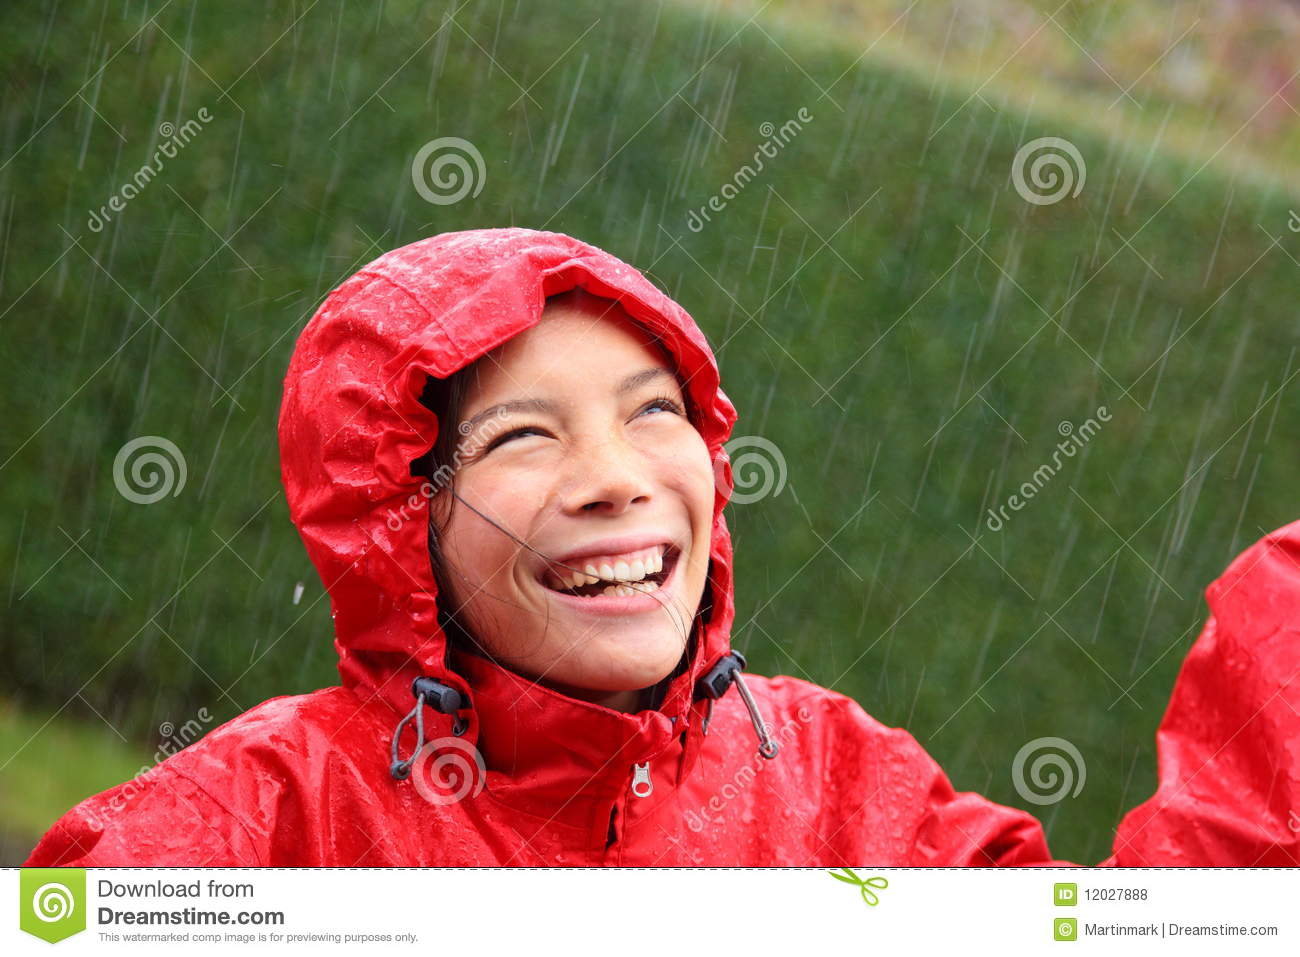 Young Woman Wearing A Red Raincoat Enjoying The Rain And Having Fun